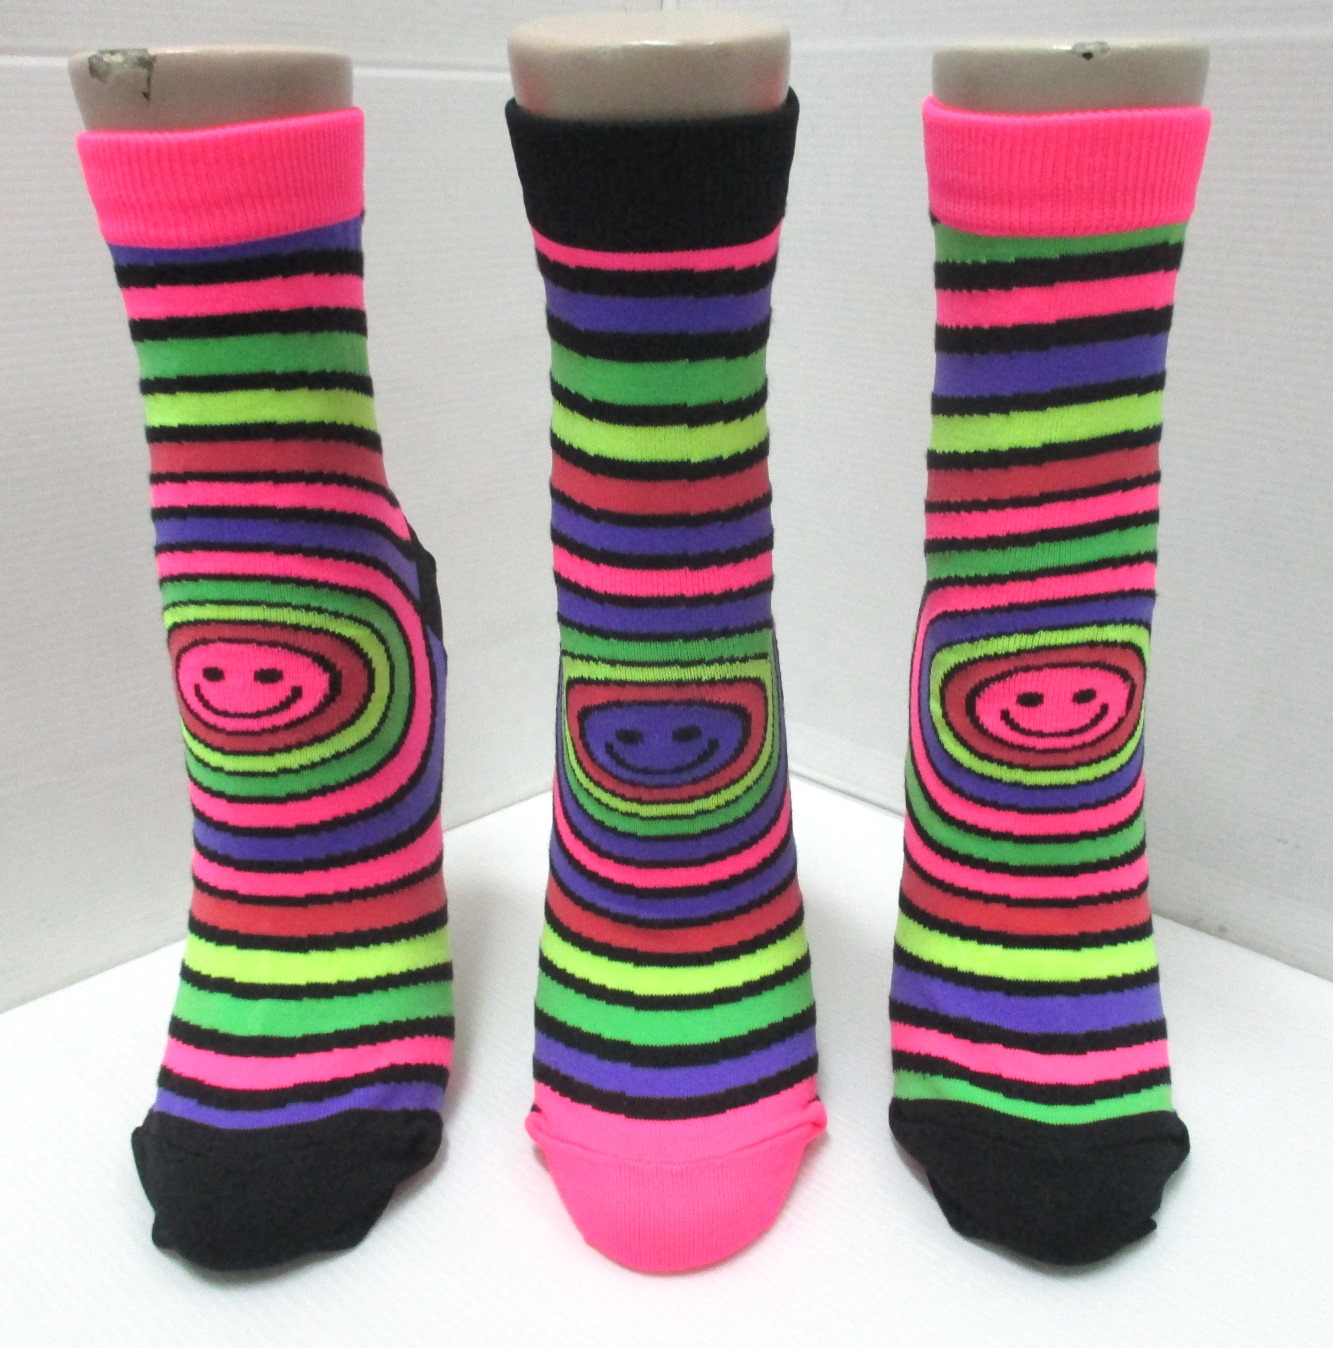 reglar socks-happy face sock